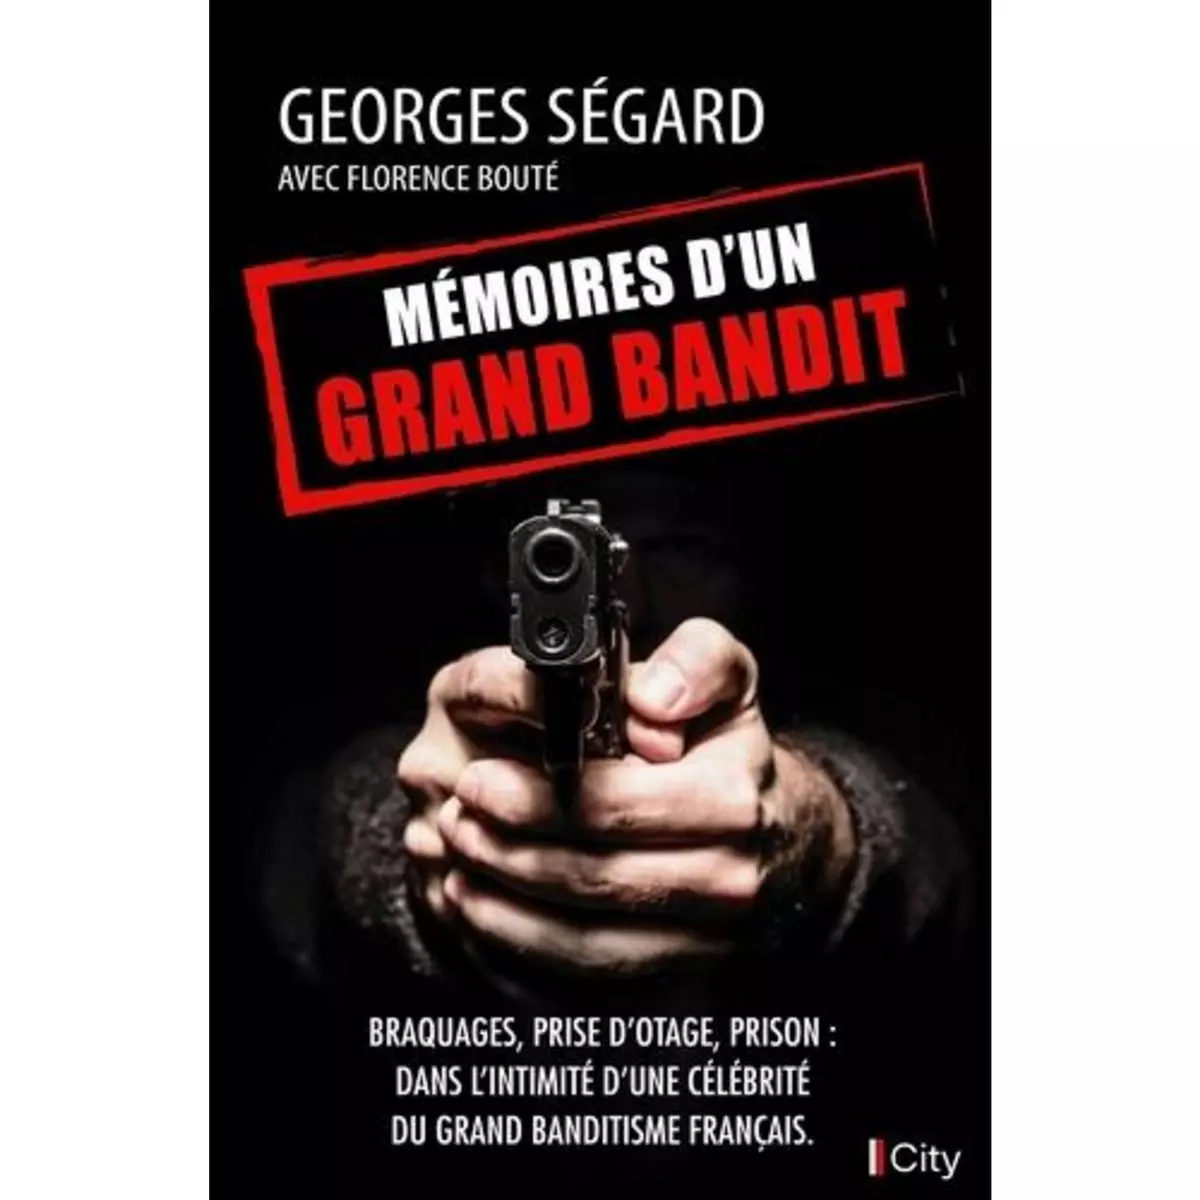  MEMOIRES D'UN GRAND BANDIT, Ségard Georges